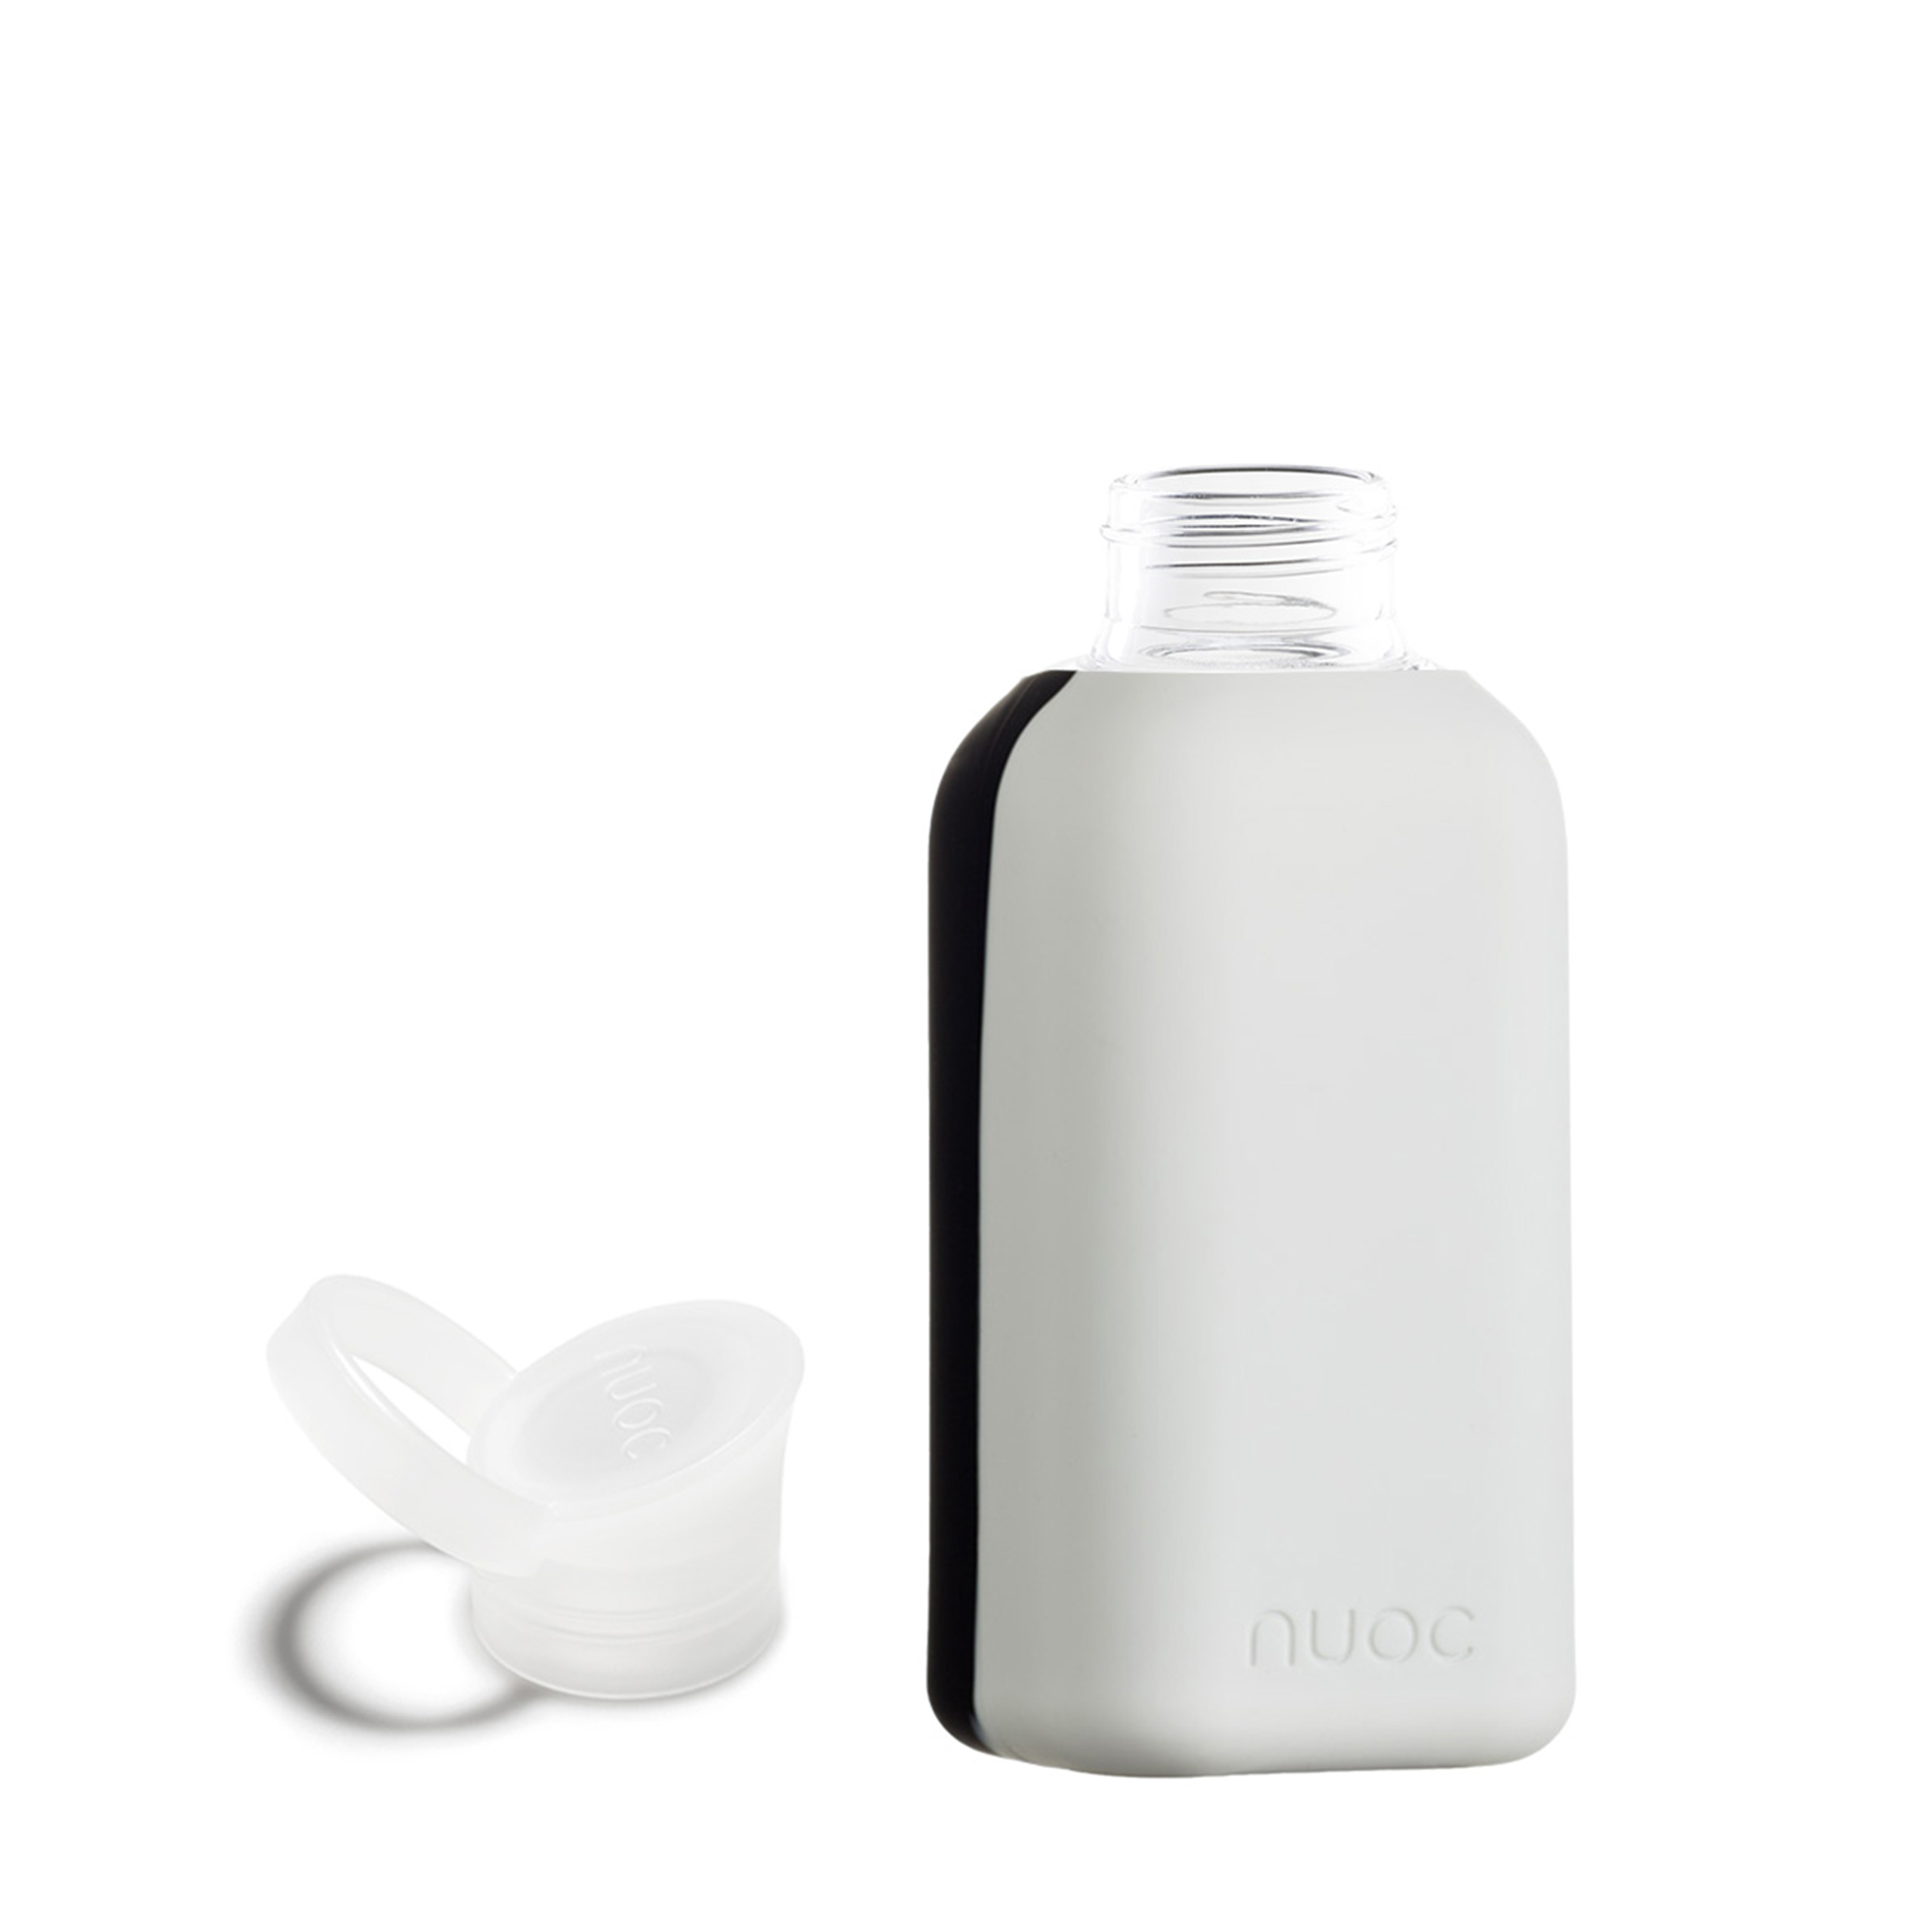 NUOC Black is White - Drikkeflaske i glass fra NUOC - Sort og hvit